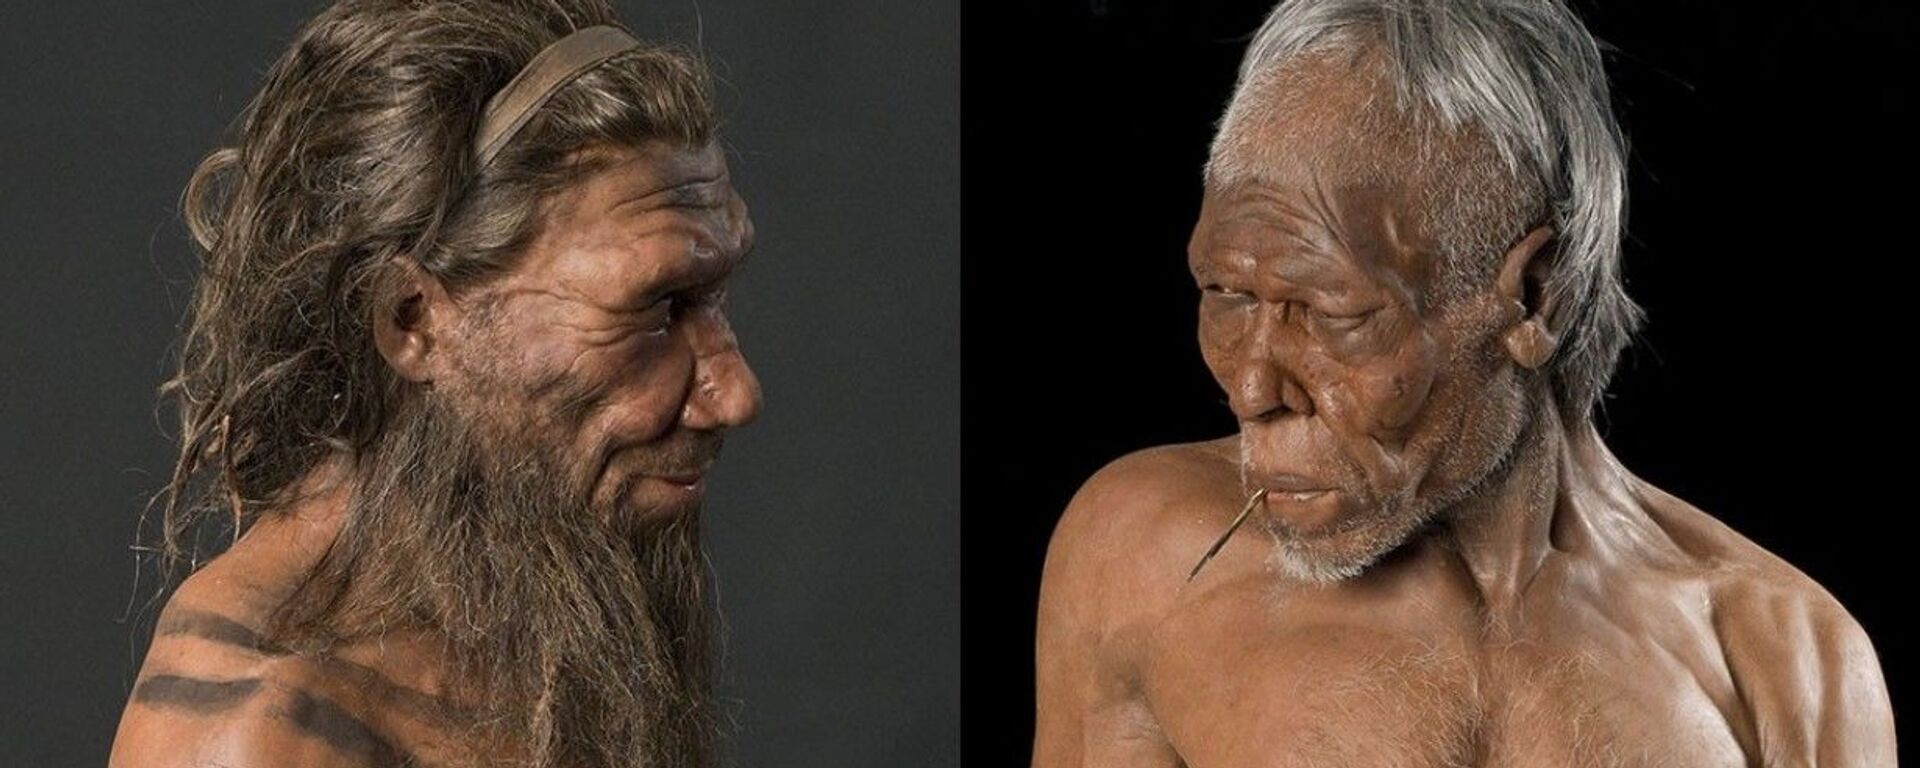 Reconstrução de neandertal e Homo sapiens pelos irmãos Kennis no Museu de História Natural de Londres - Sputnik Brasil, 1920, 22.04.2021